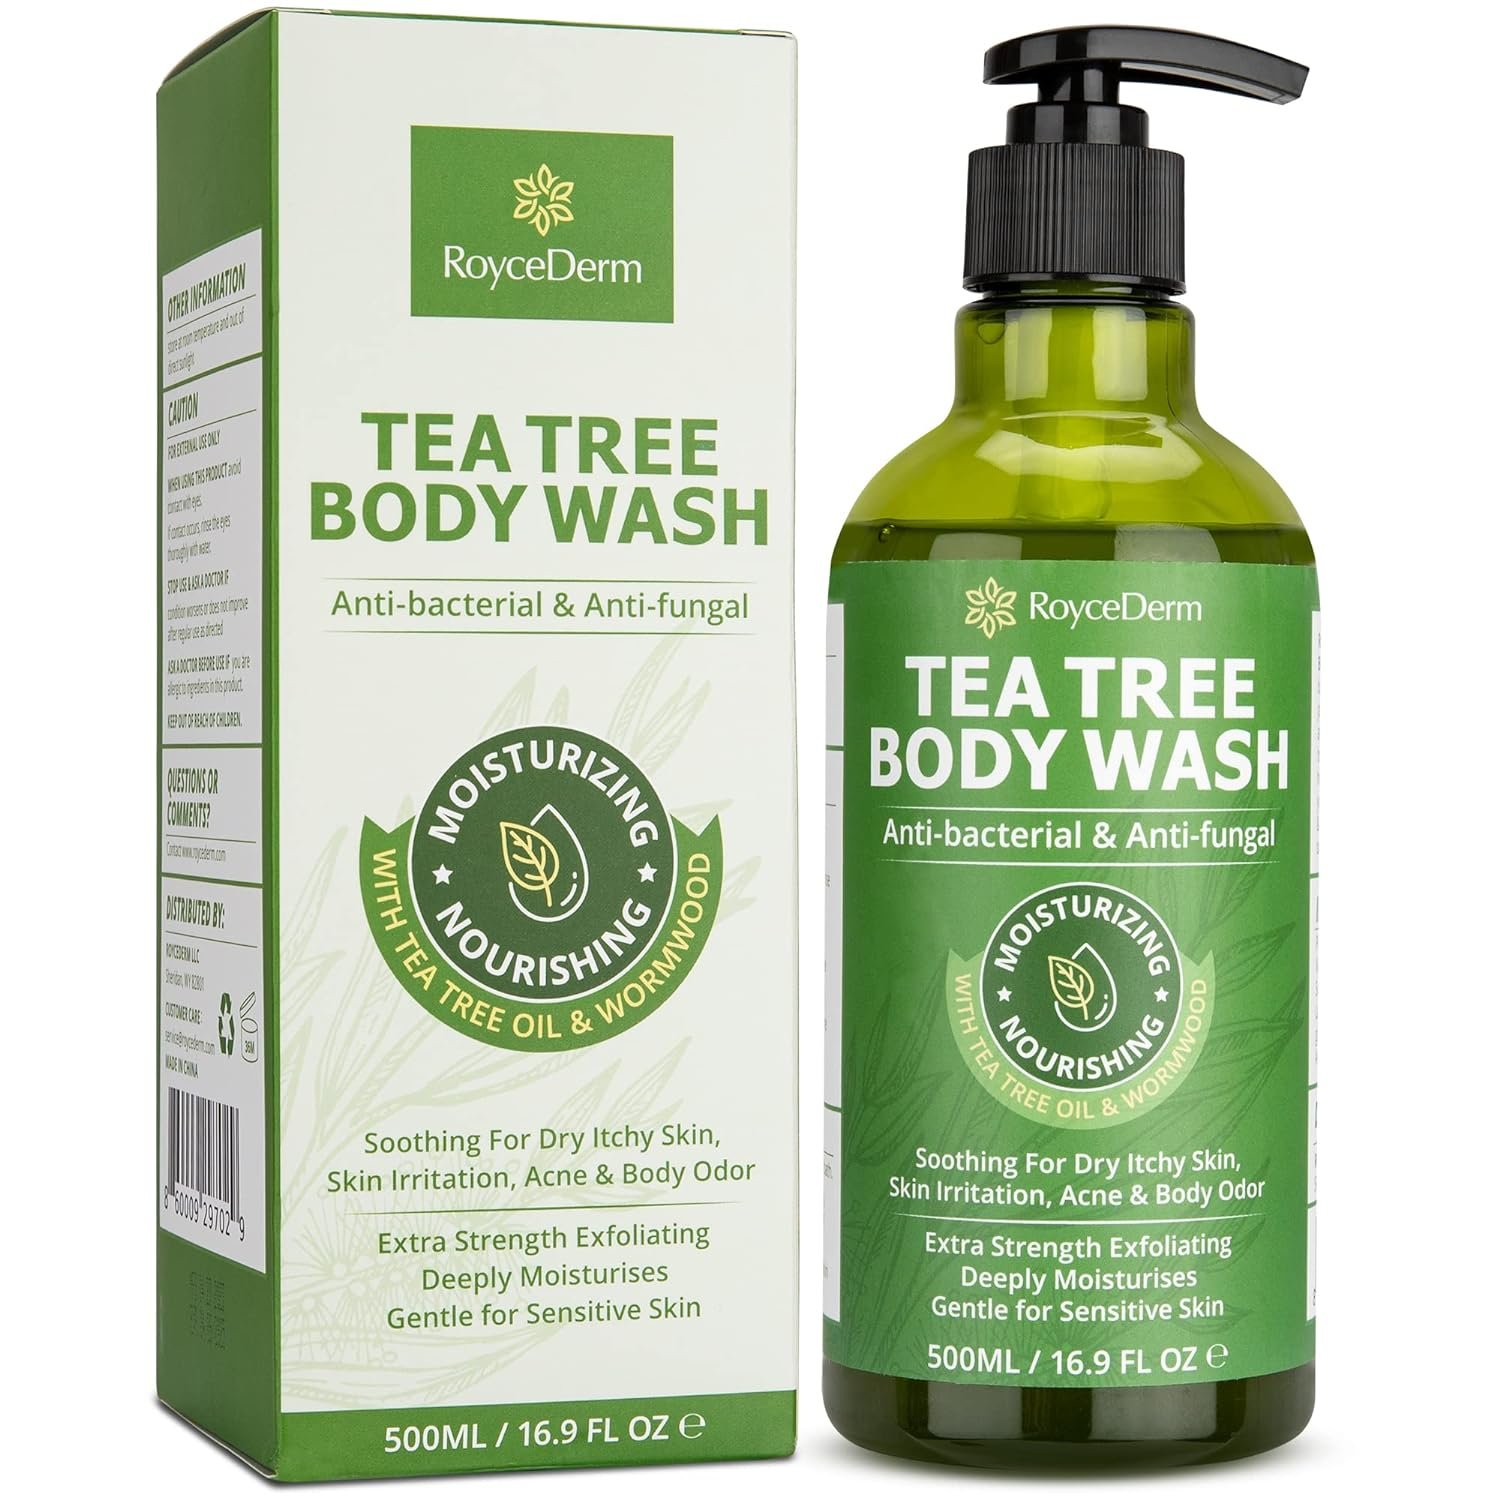 Roycederm Antifungal Body Wash Soap